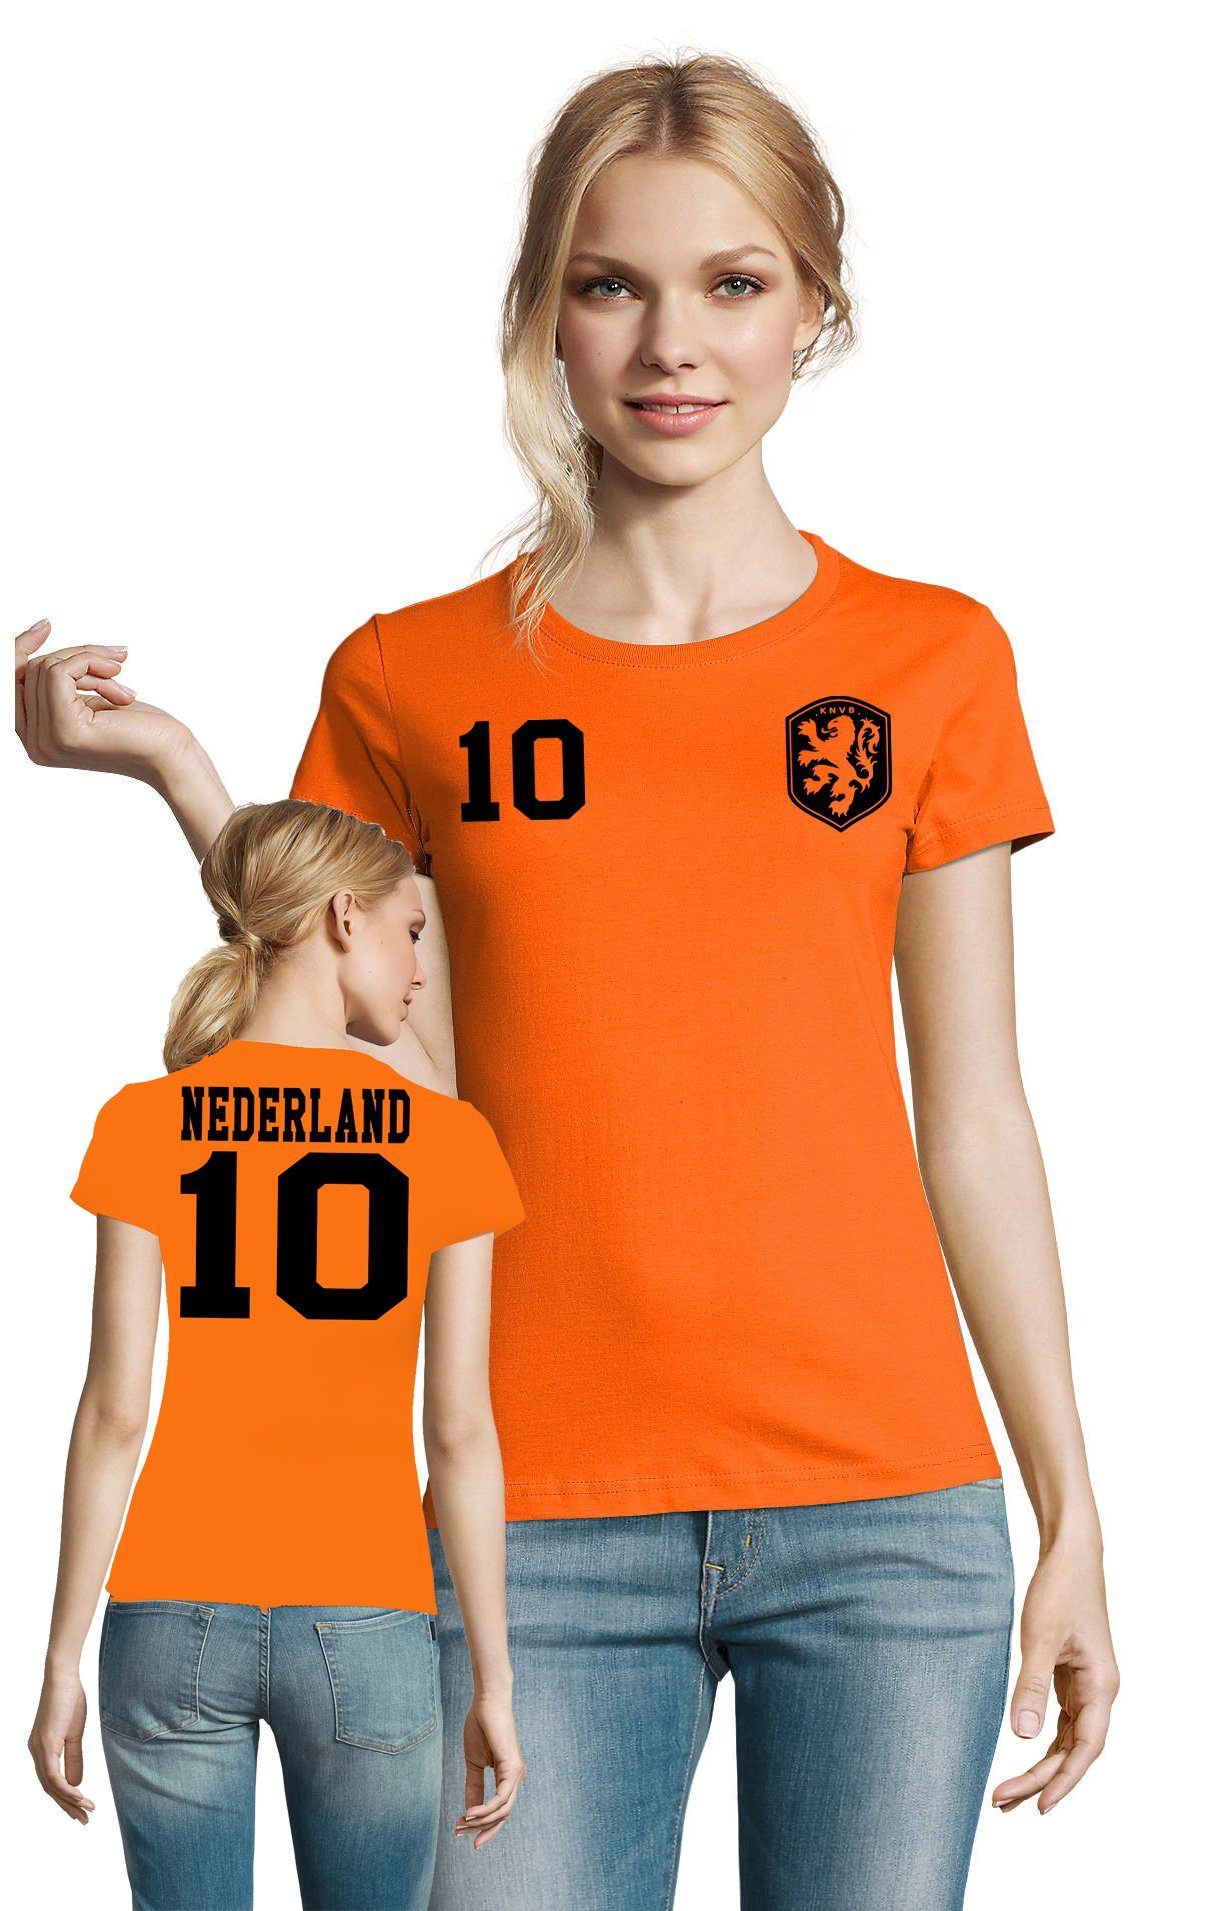 T-Shirt Blondie Brownie Holland Sport Meister Fußball & Niederlande Trikot WM EM Damen